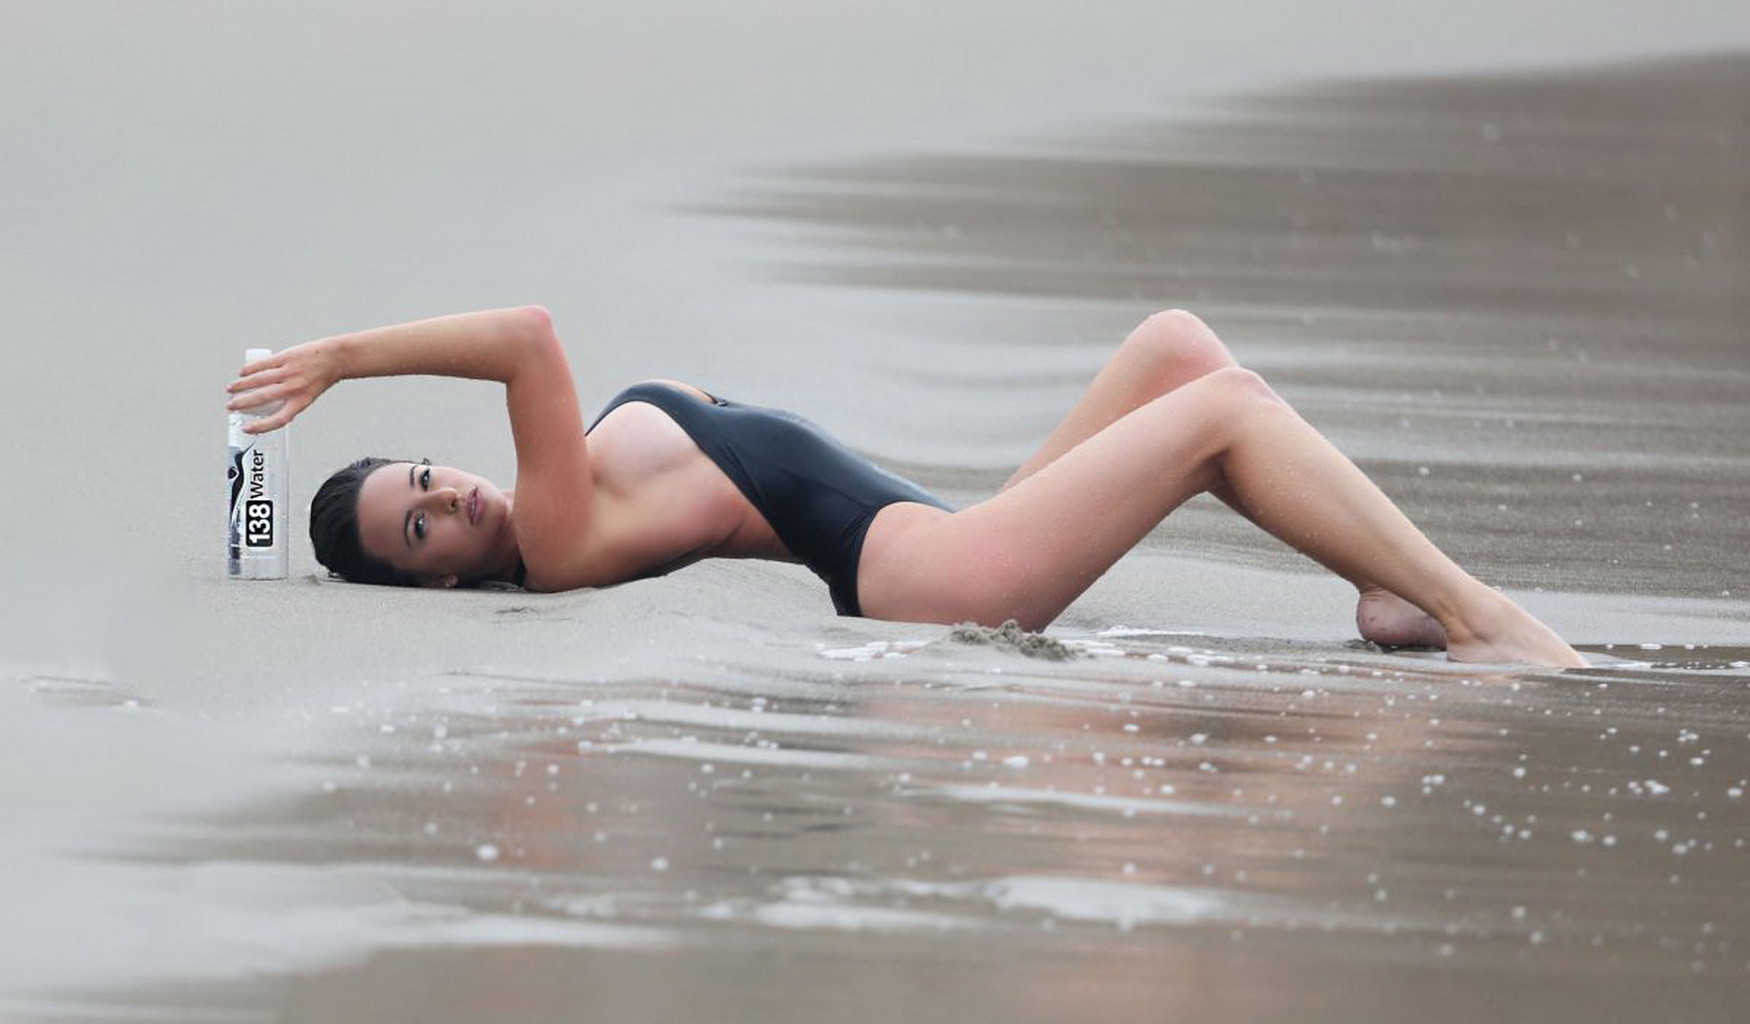 Kayla swift montre ses seins et ses fesses en maillot de bain noir alors qu'elle se gèle sur la plage.
 #75177350